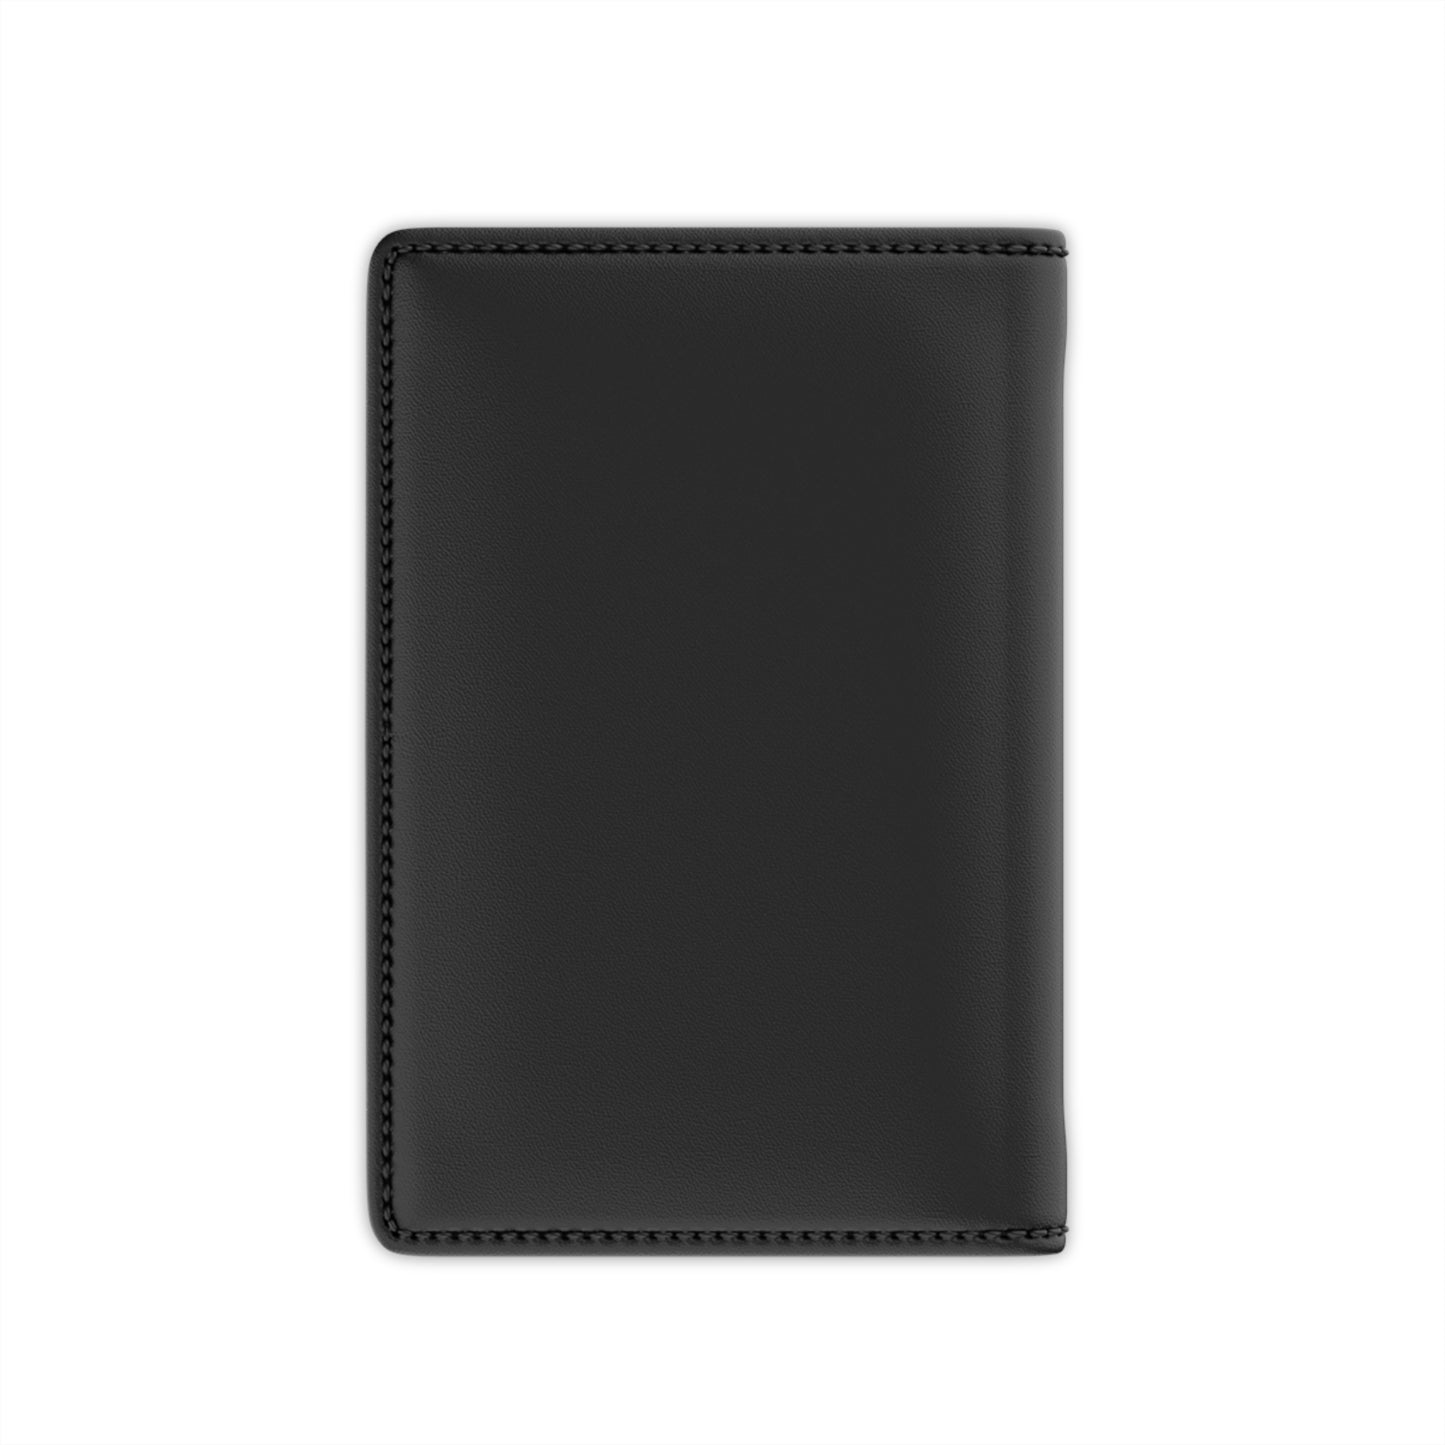 Travel Passport Wallet Case - Black Edition